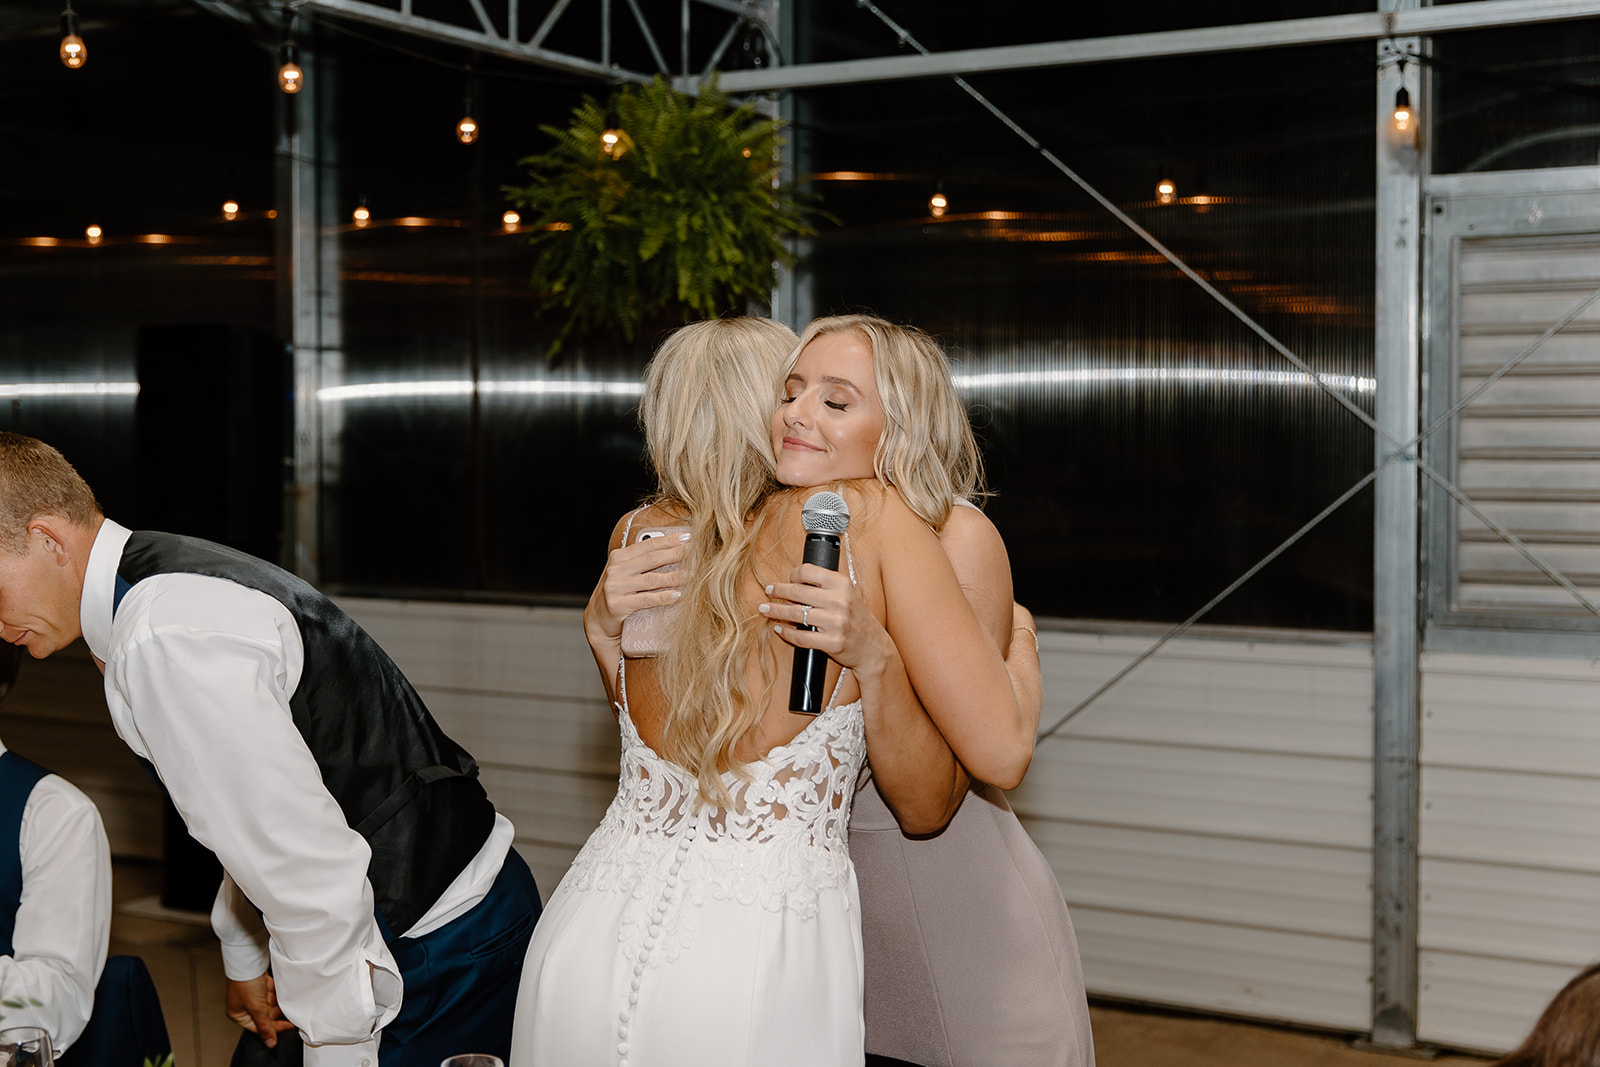 Bride hugs sister after speech at reception